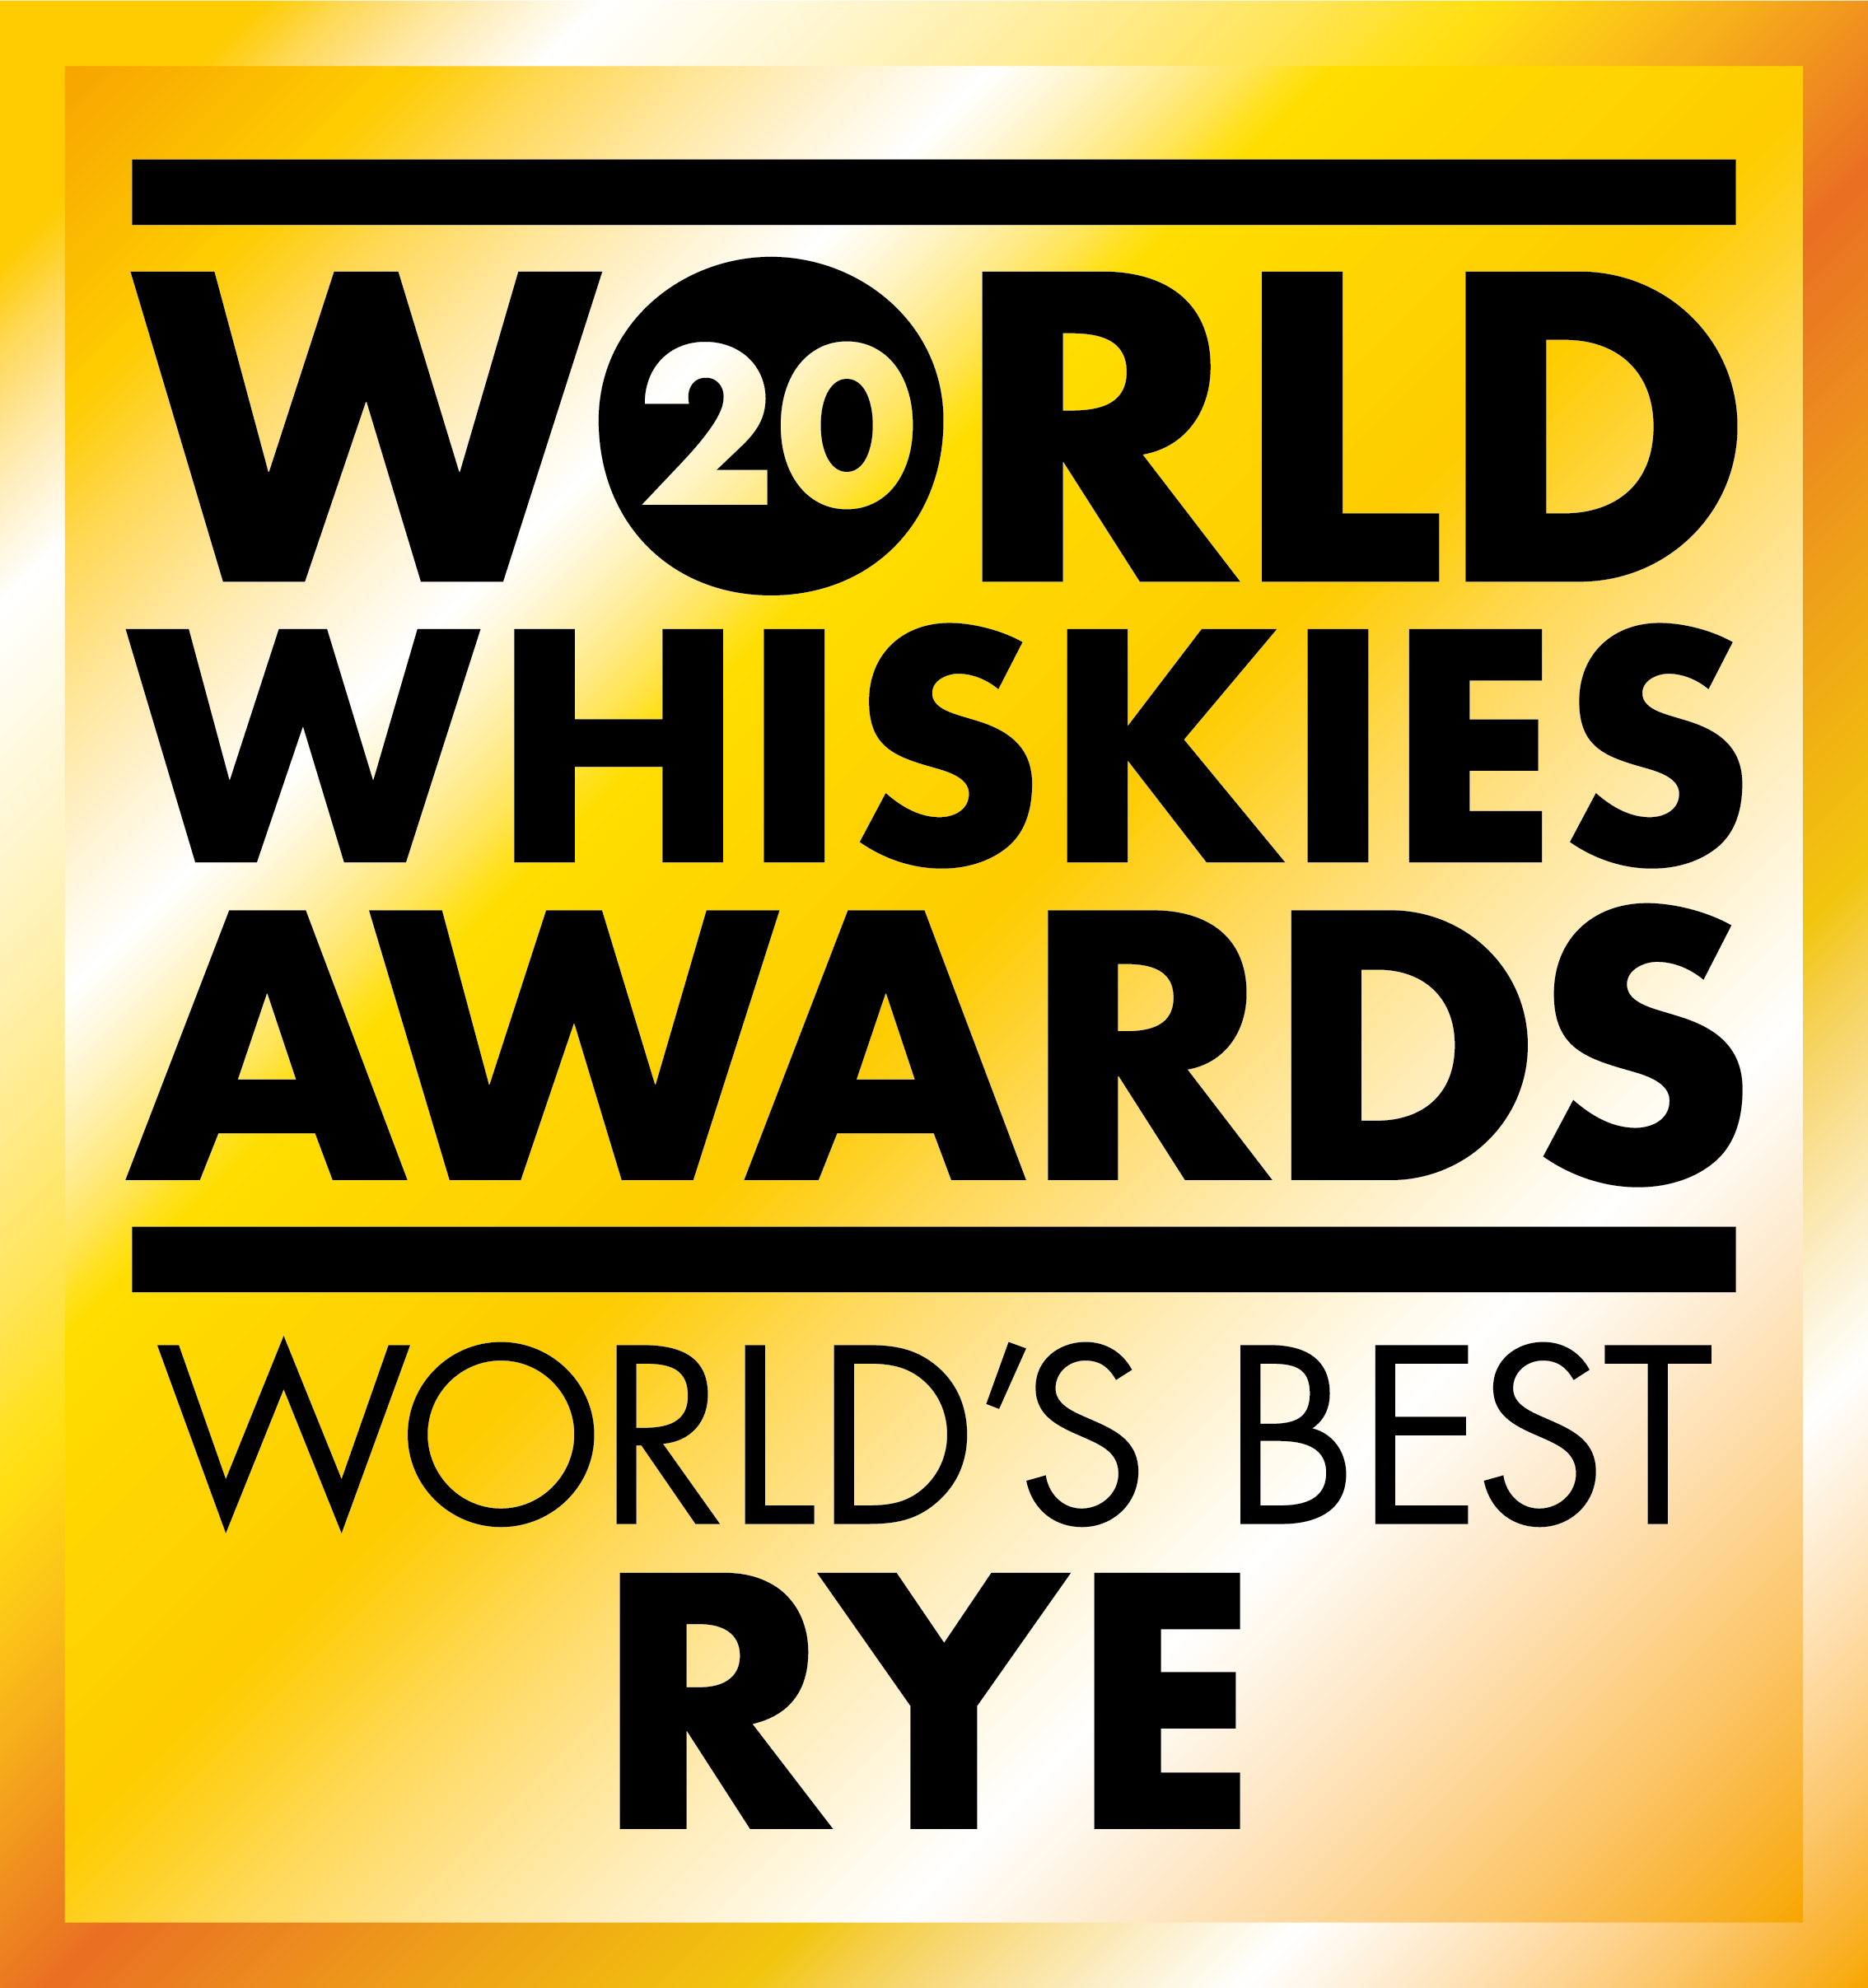 Rye Malt Whisky